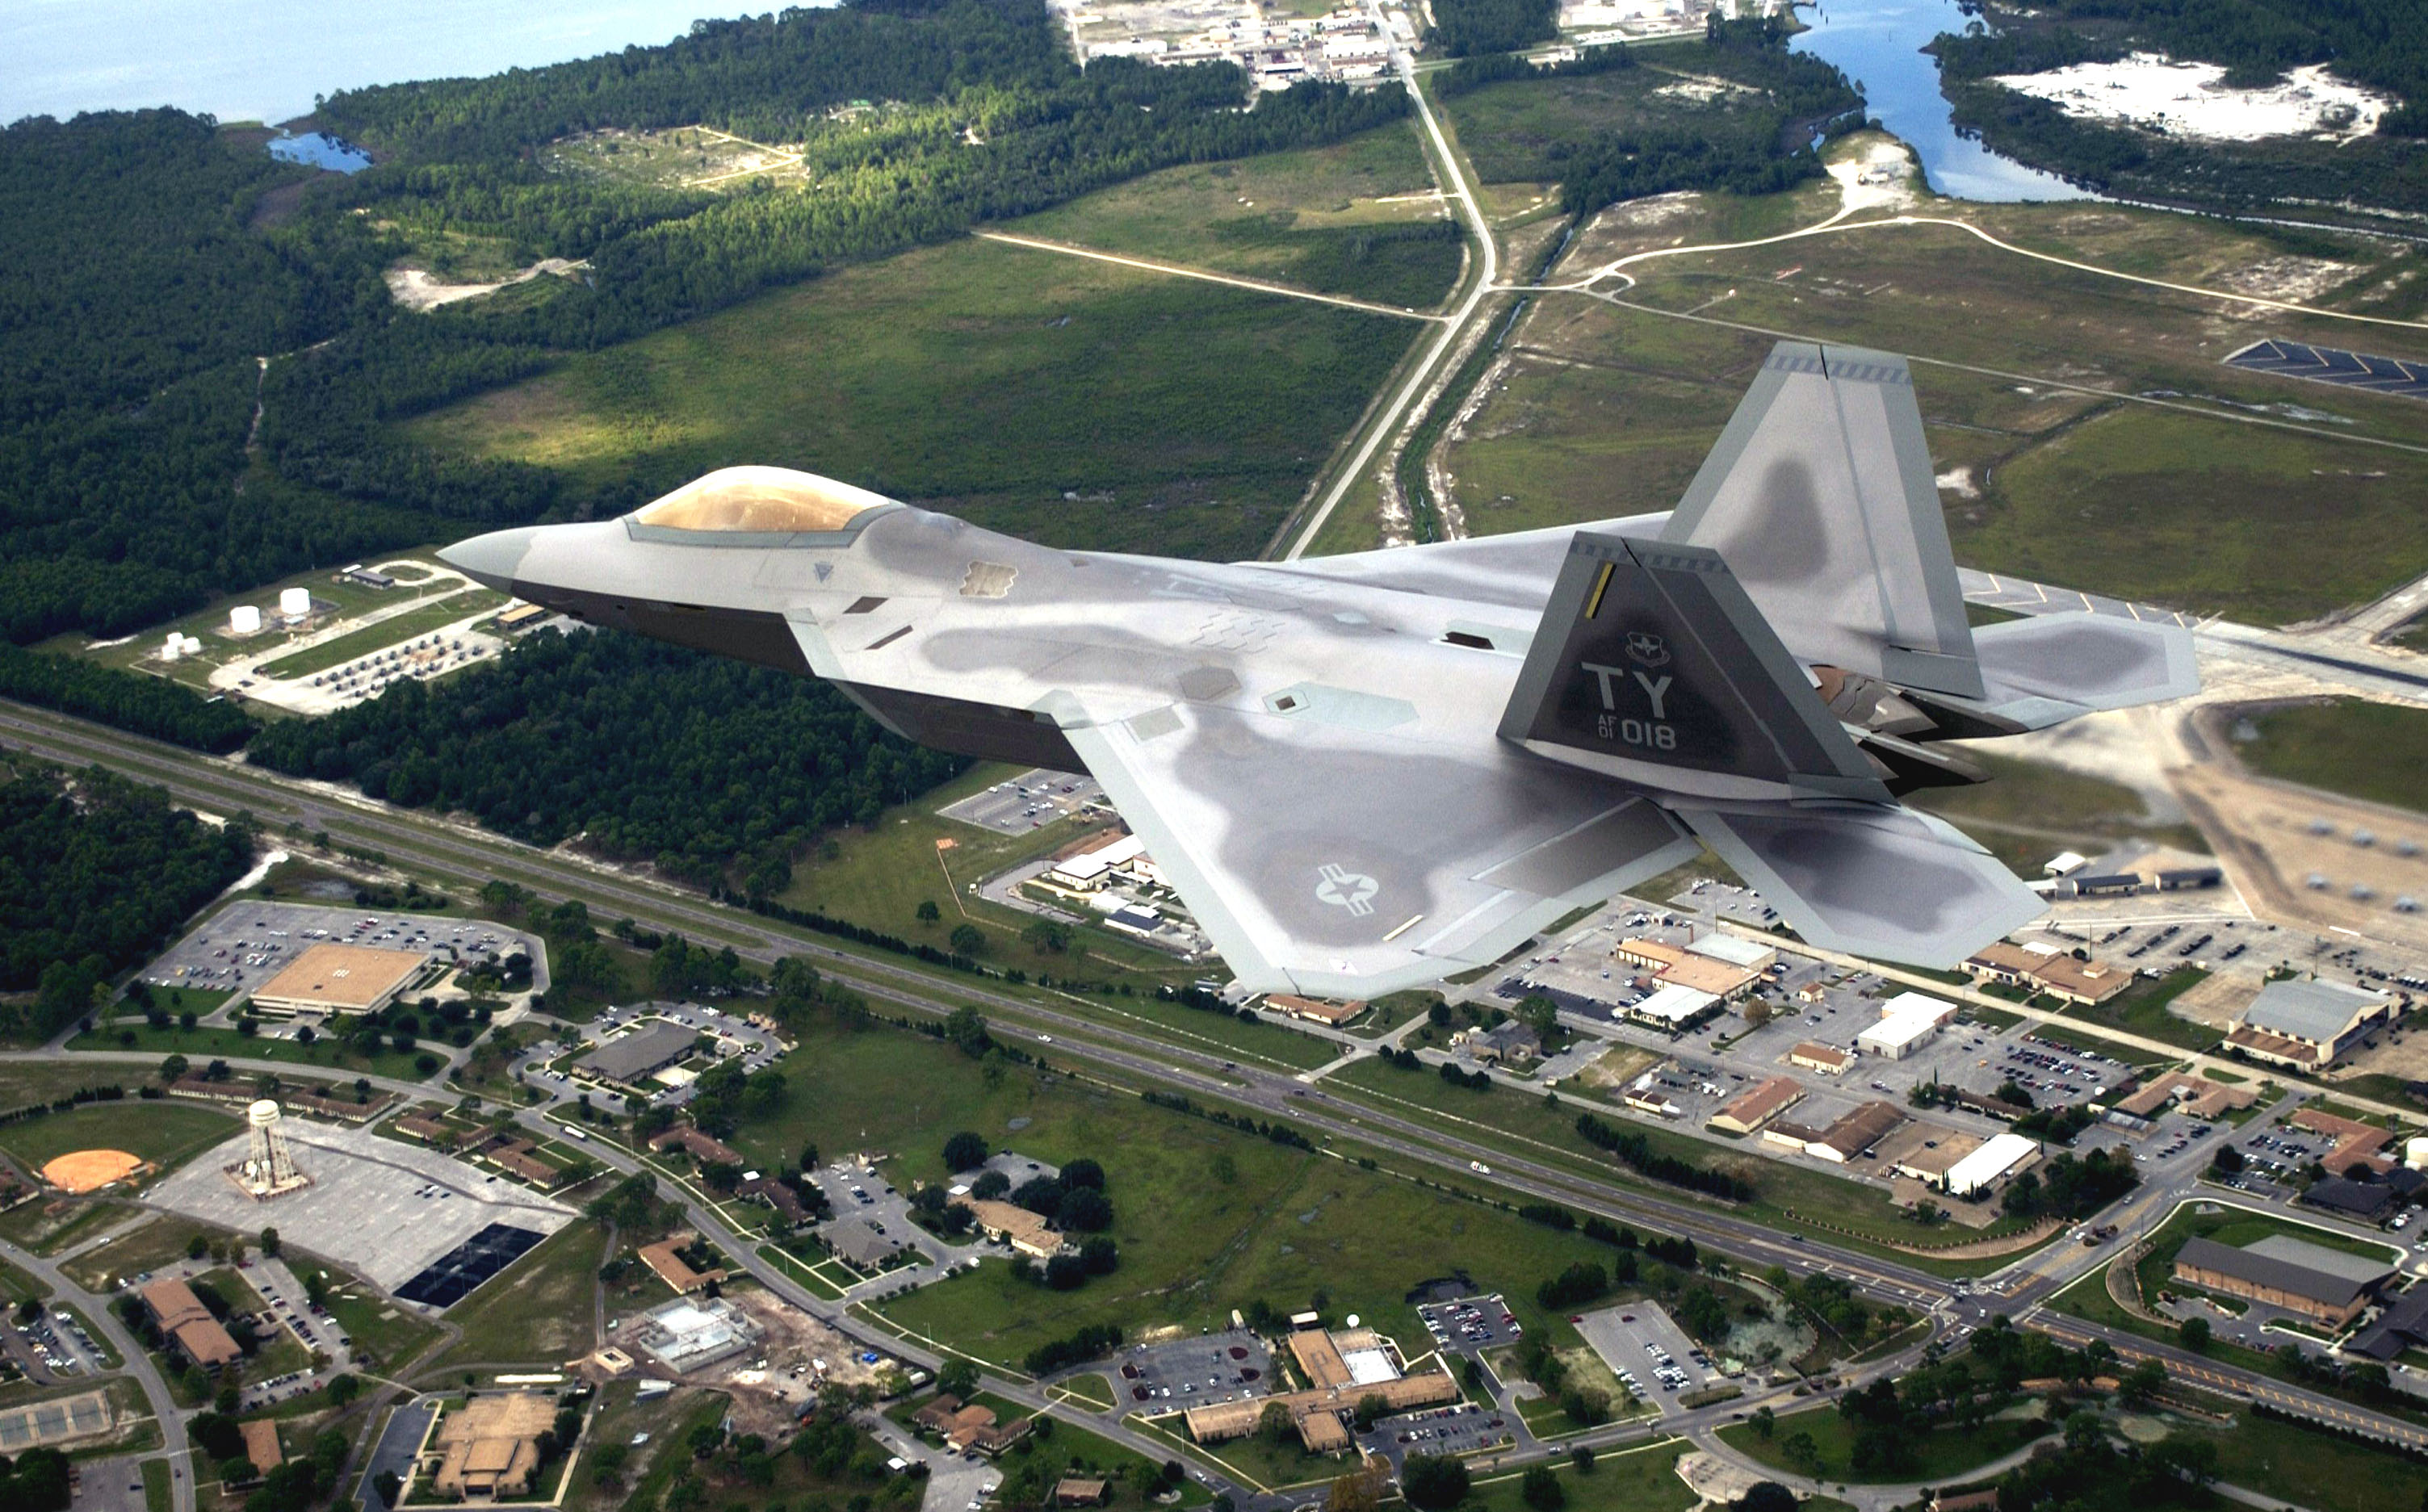 La base aérienne de Tyndall a envoyé un avion de chasse F-22 Raptor au musée et se prépare à l'arrivée du F-35 Lightning II.